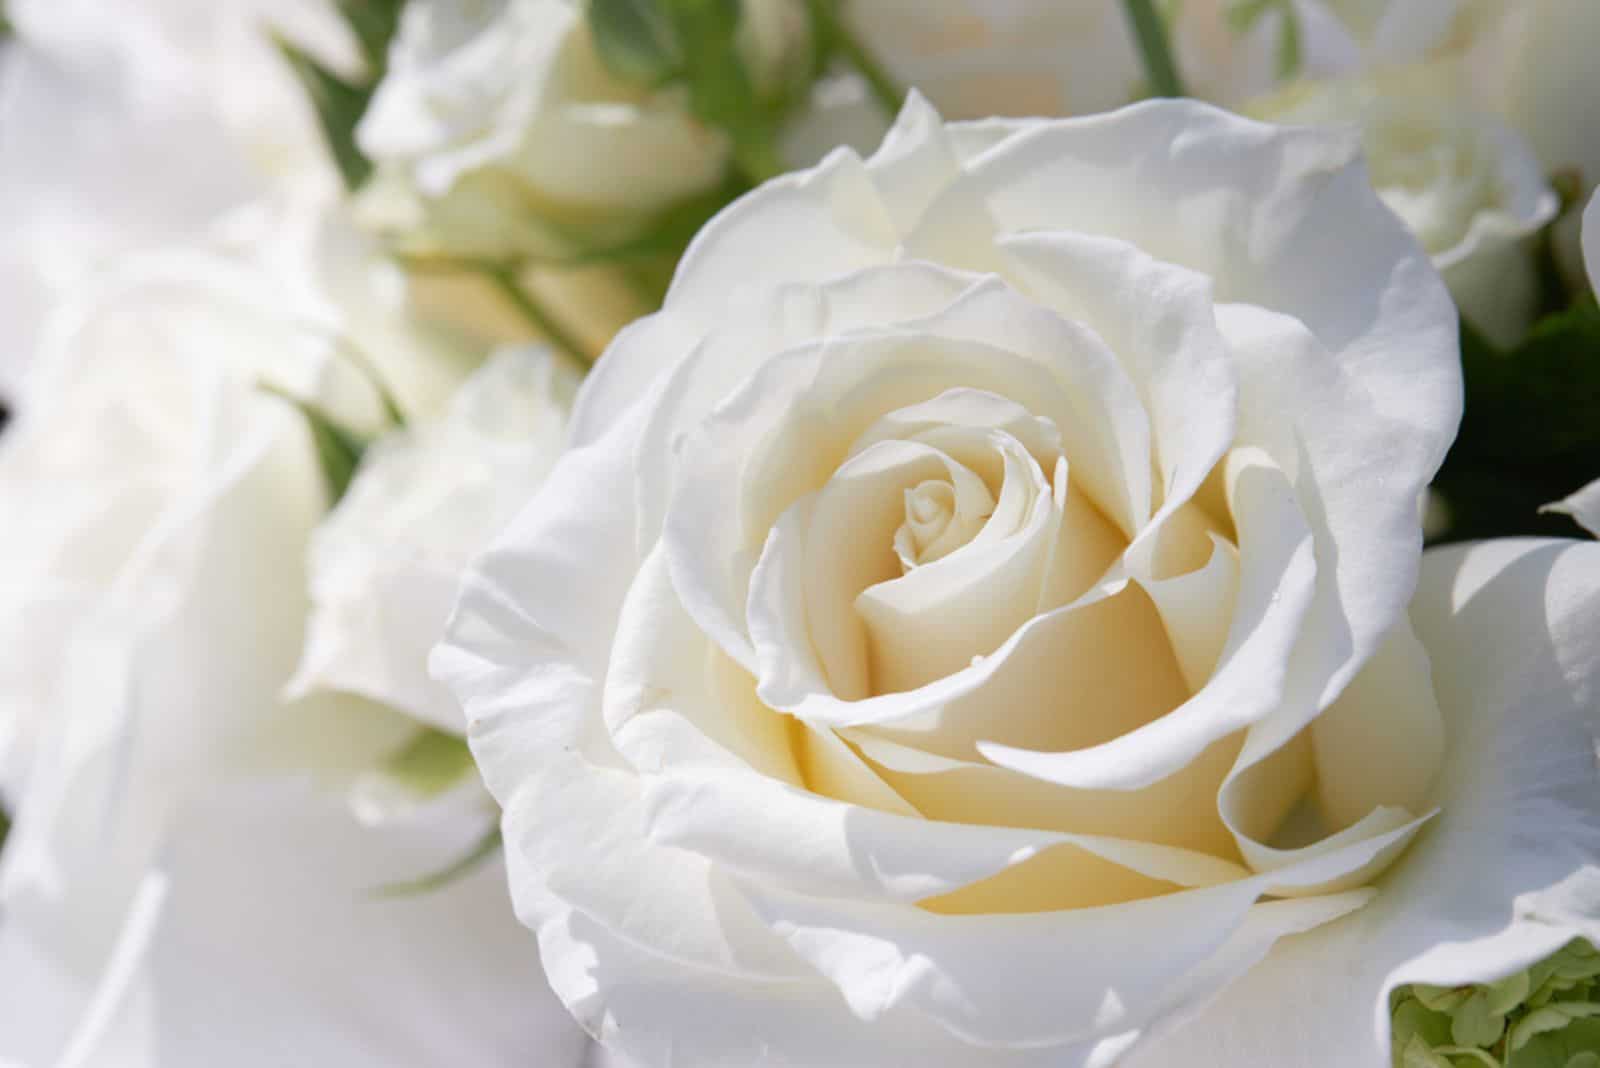 Rosée sur les pétales d'une rose blanche